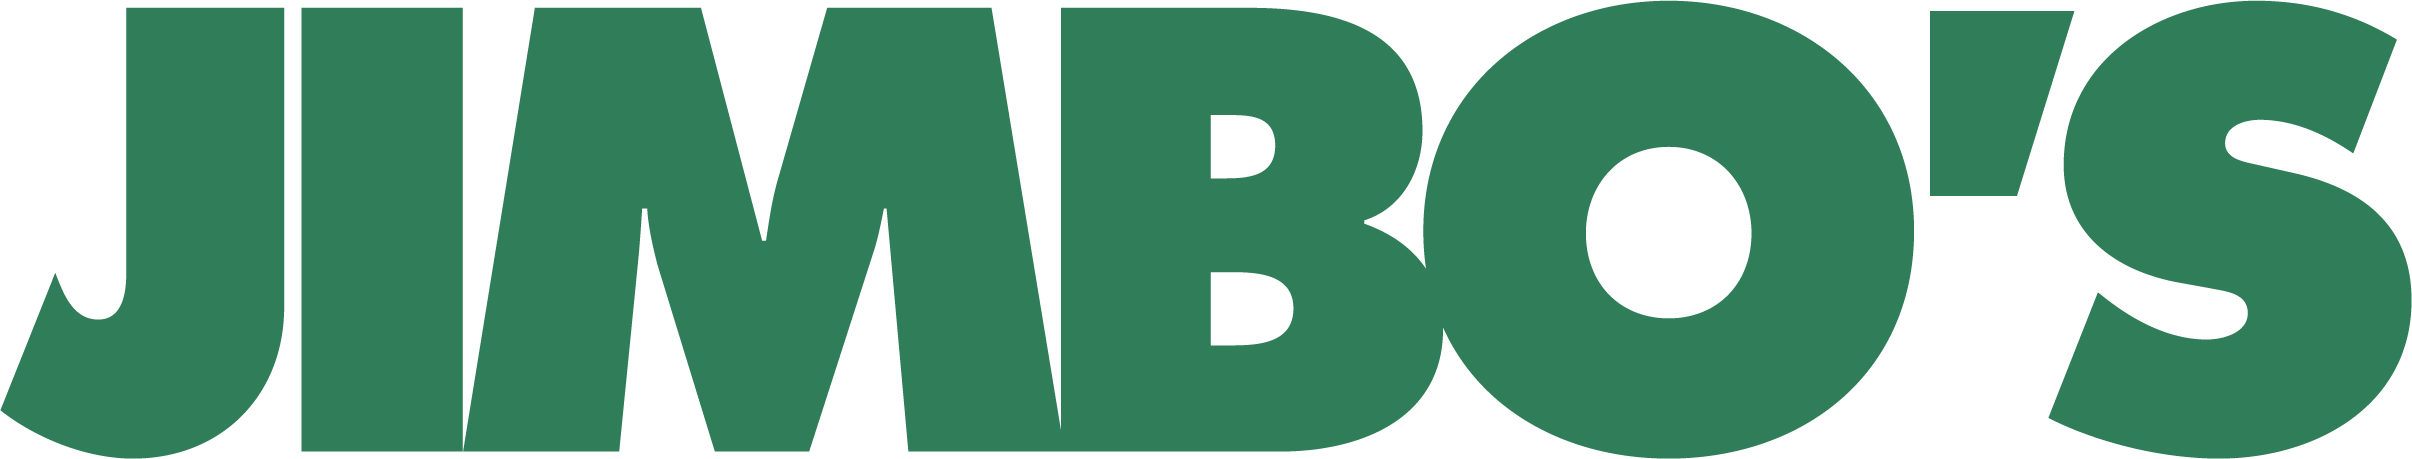 Jimbo's Logo